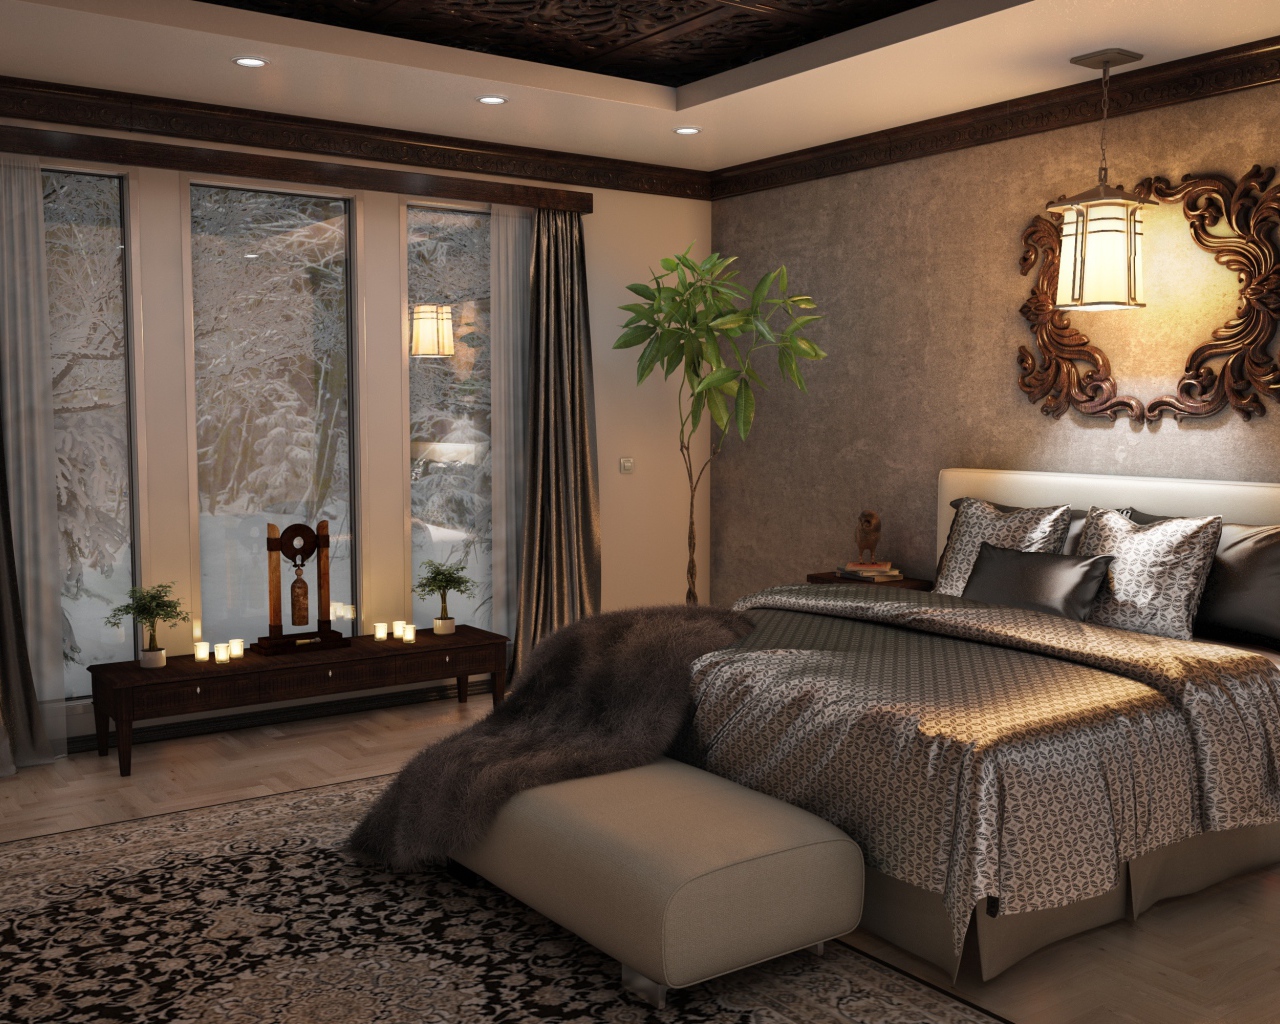 Кровать с красивым шелковым покрывалом в комнате с большим окном 